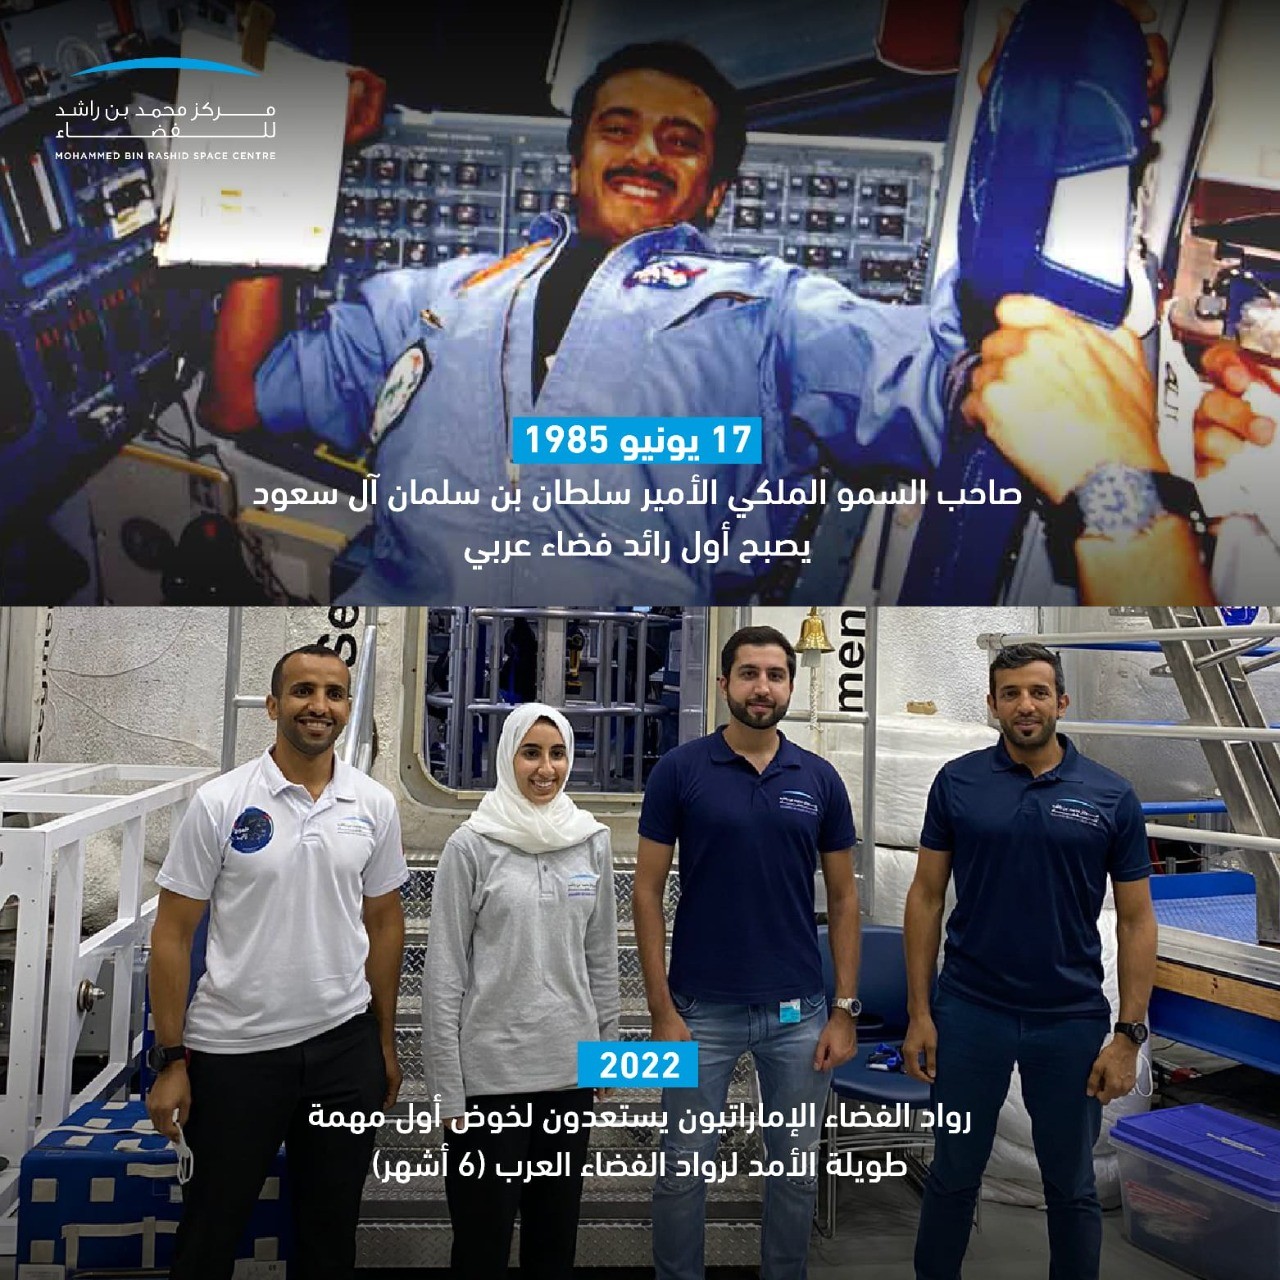 مركز محمد بن راشد للفضاء يحتفي بذكرى انطلاق الأمير سلطان إلى الفضاء